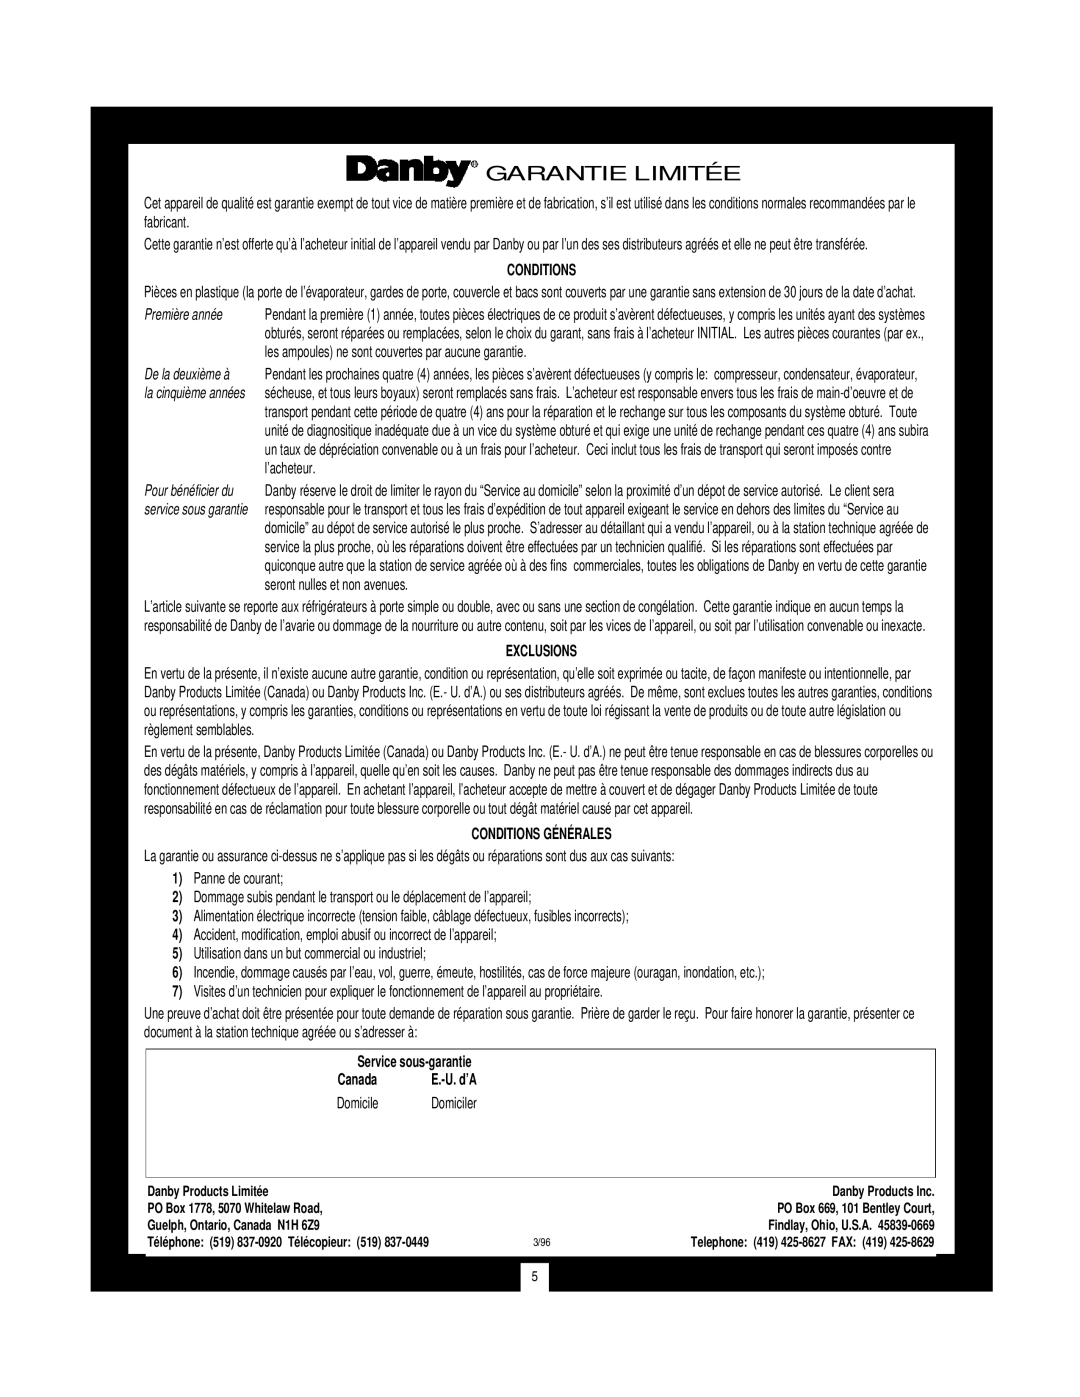 Danby DWC172BL manual Garantie Limitée, Exclusions, Conditions Générales, Service sous-garantie, Canada, Domicile 